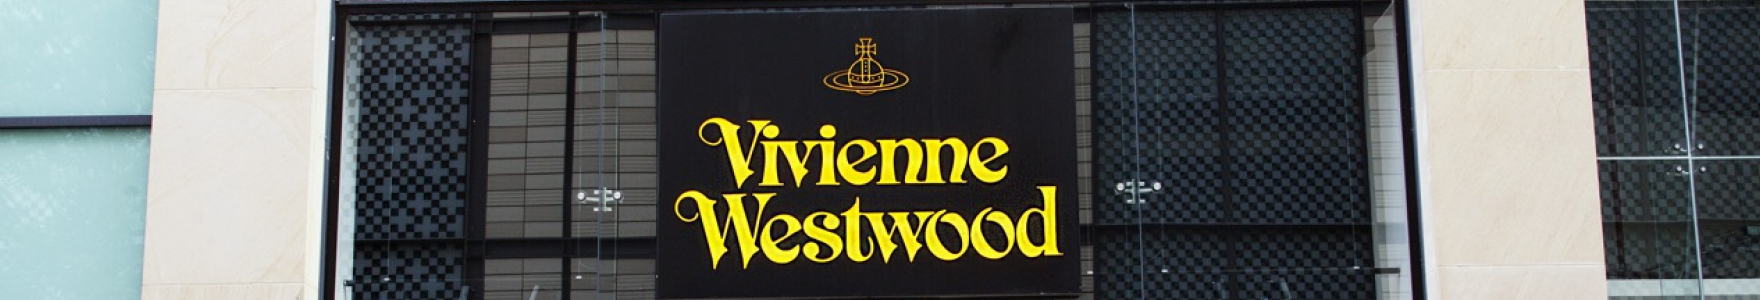 Vivienne Westwood 背景